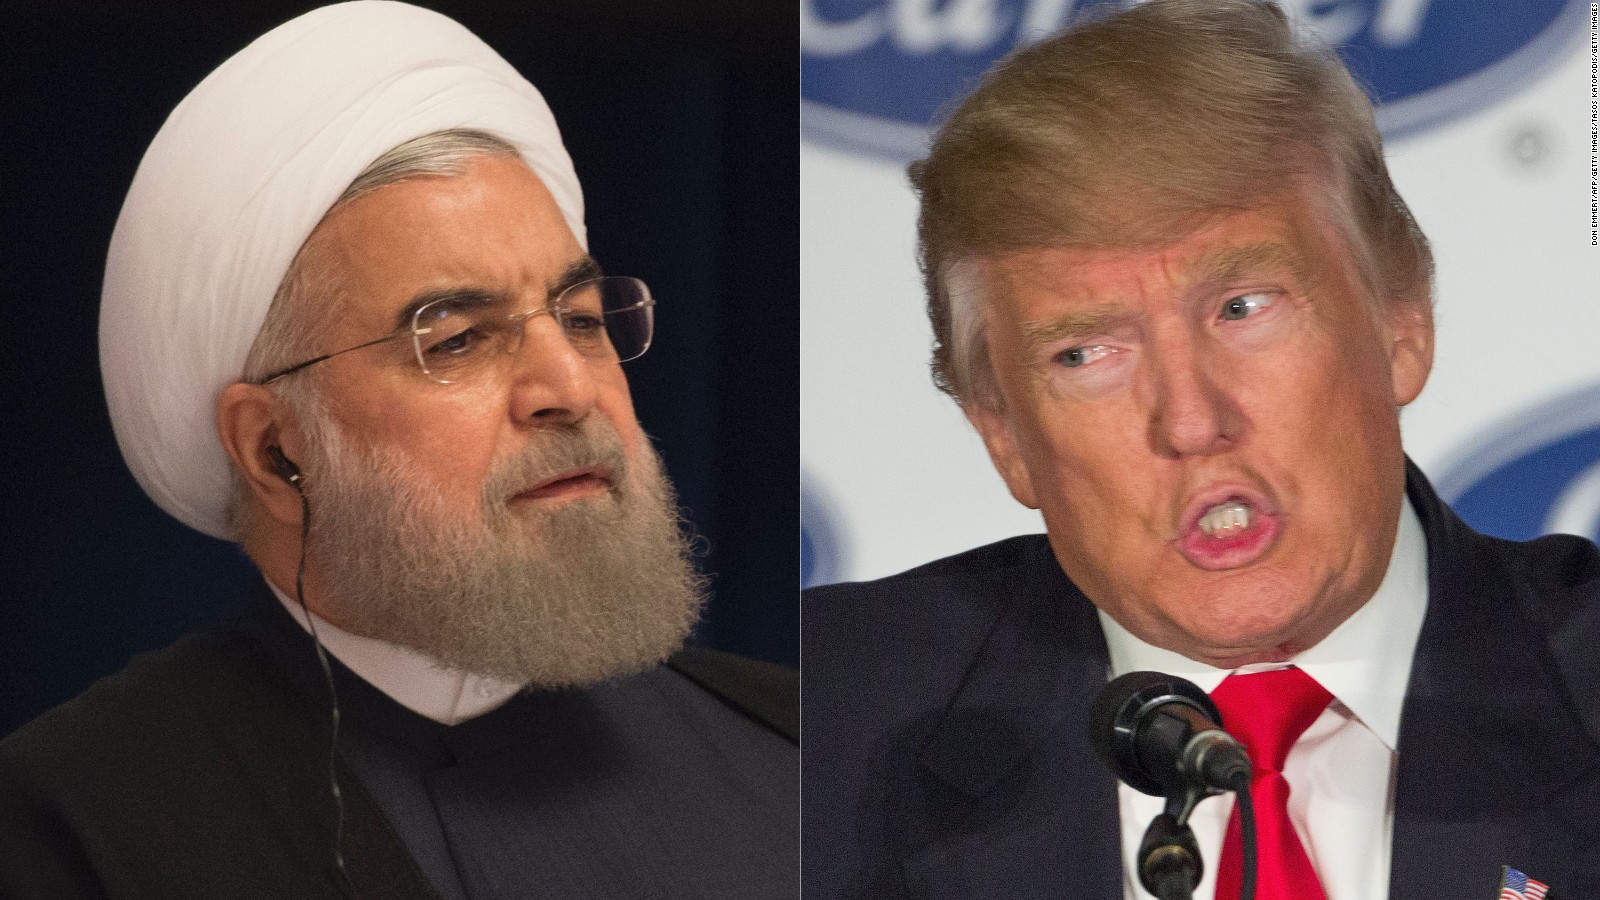 Τραμπ προς Τεχεράνη: «Καλύτερα να μην ξεκινήσετε ξανά το πυρηνικό σας πρόγραμμα γιατί θα αποκτήσετε σοβαρό πρόβλημα»